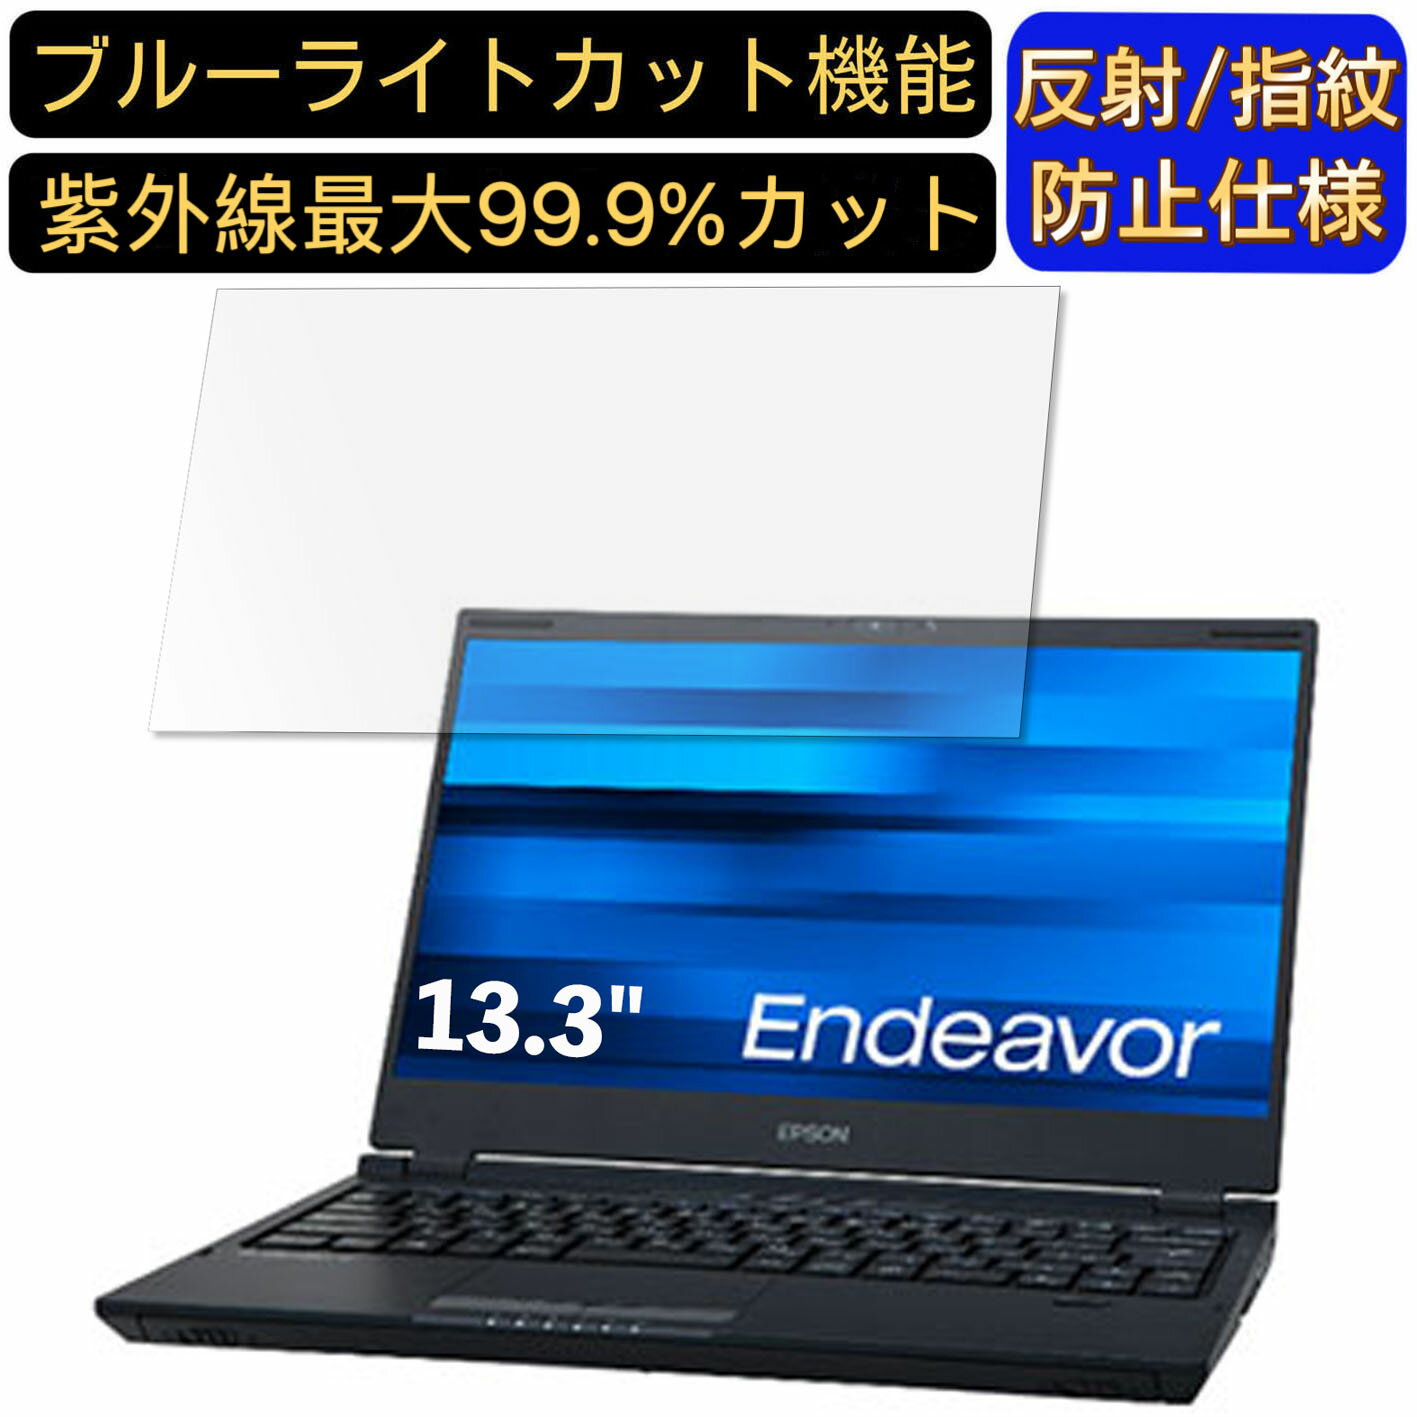 【ポイント2倍】EPSON Endeavor NA521E 13.3